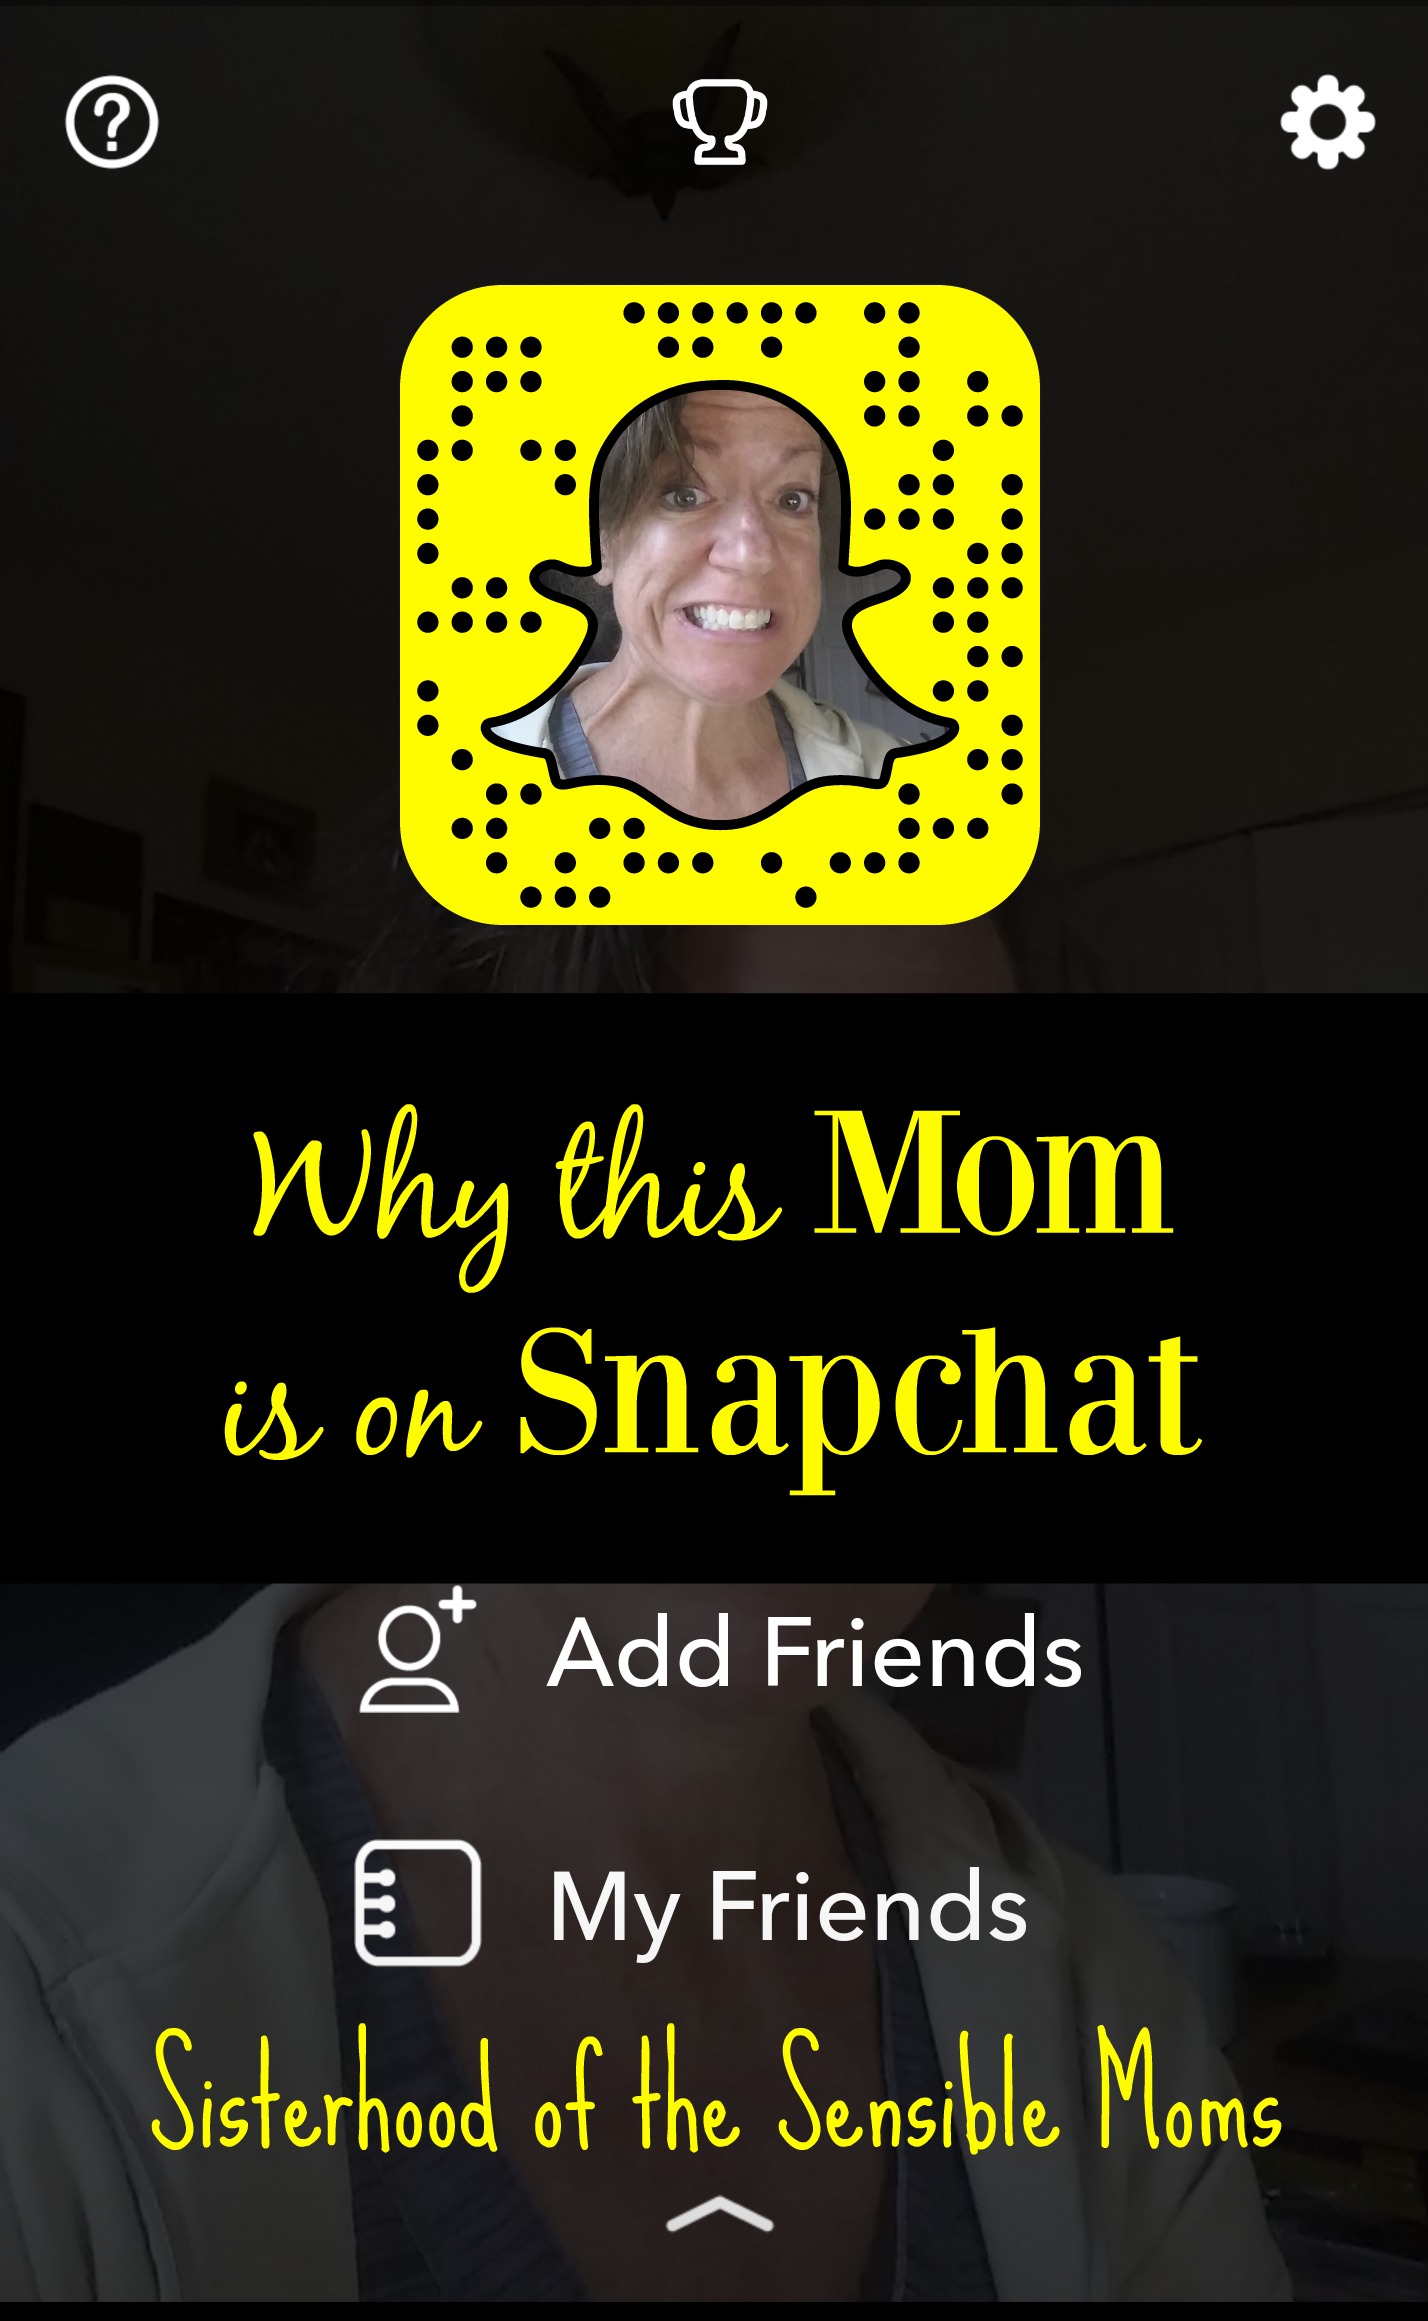 Here’s Why I Like Snapchat.